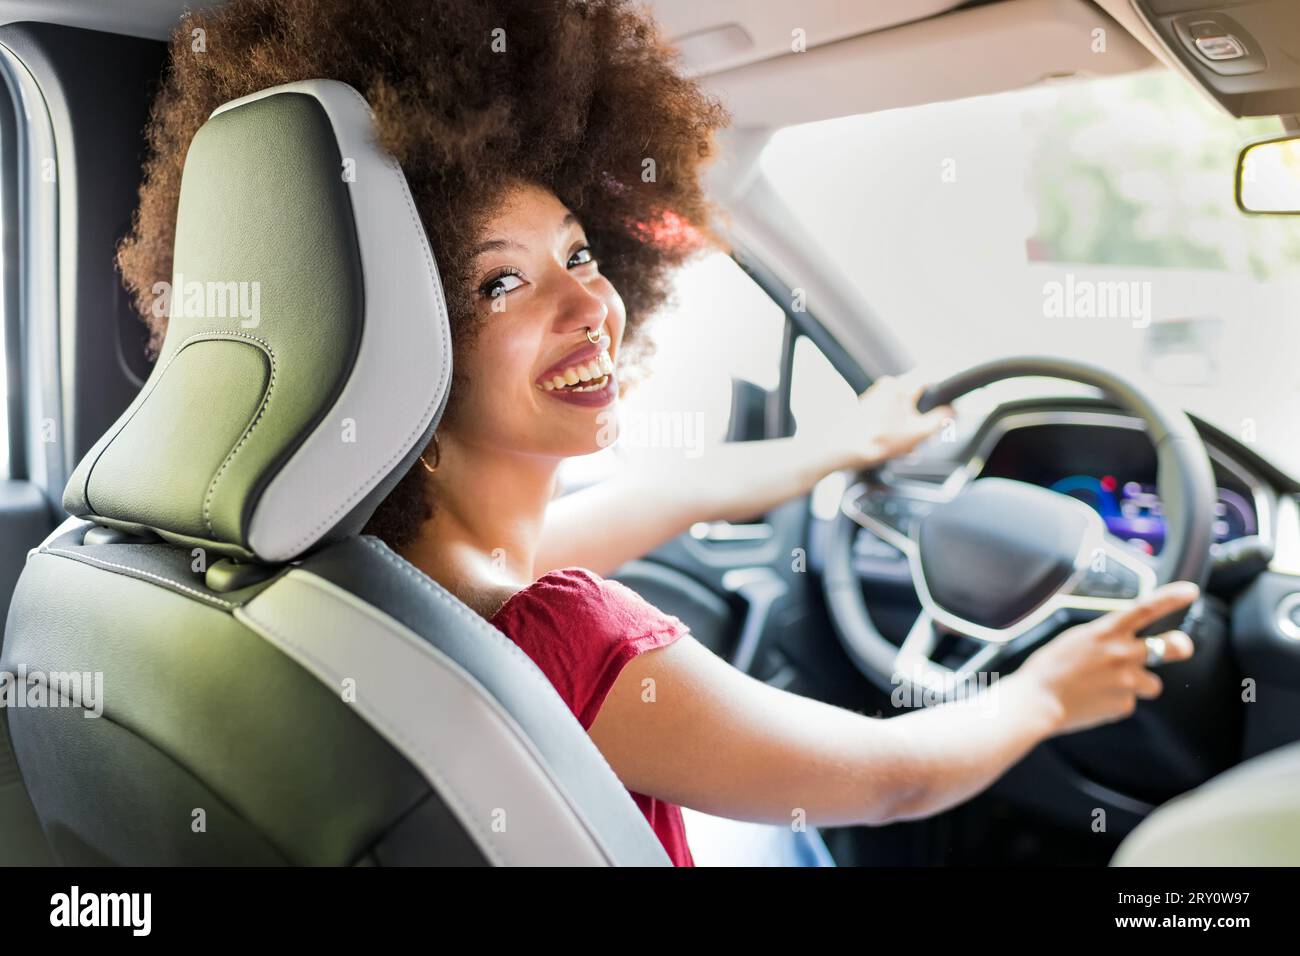 Heureuse femme afro-américaine avec coiffure afro conduisant l'automobile moderne tout en regardant loin avec sourire toothy Banque D'Images